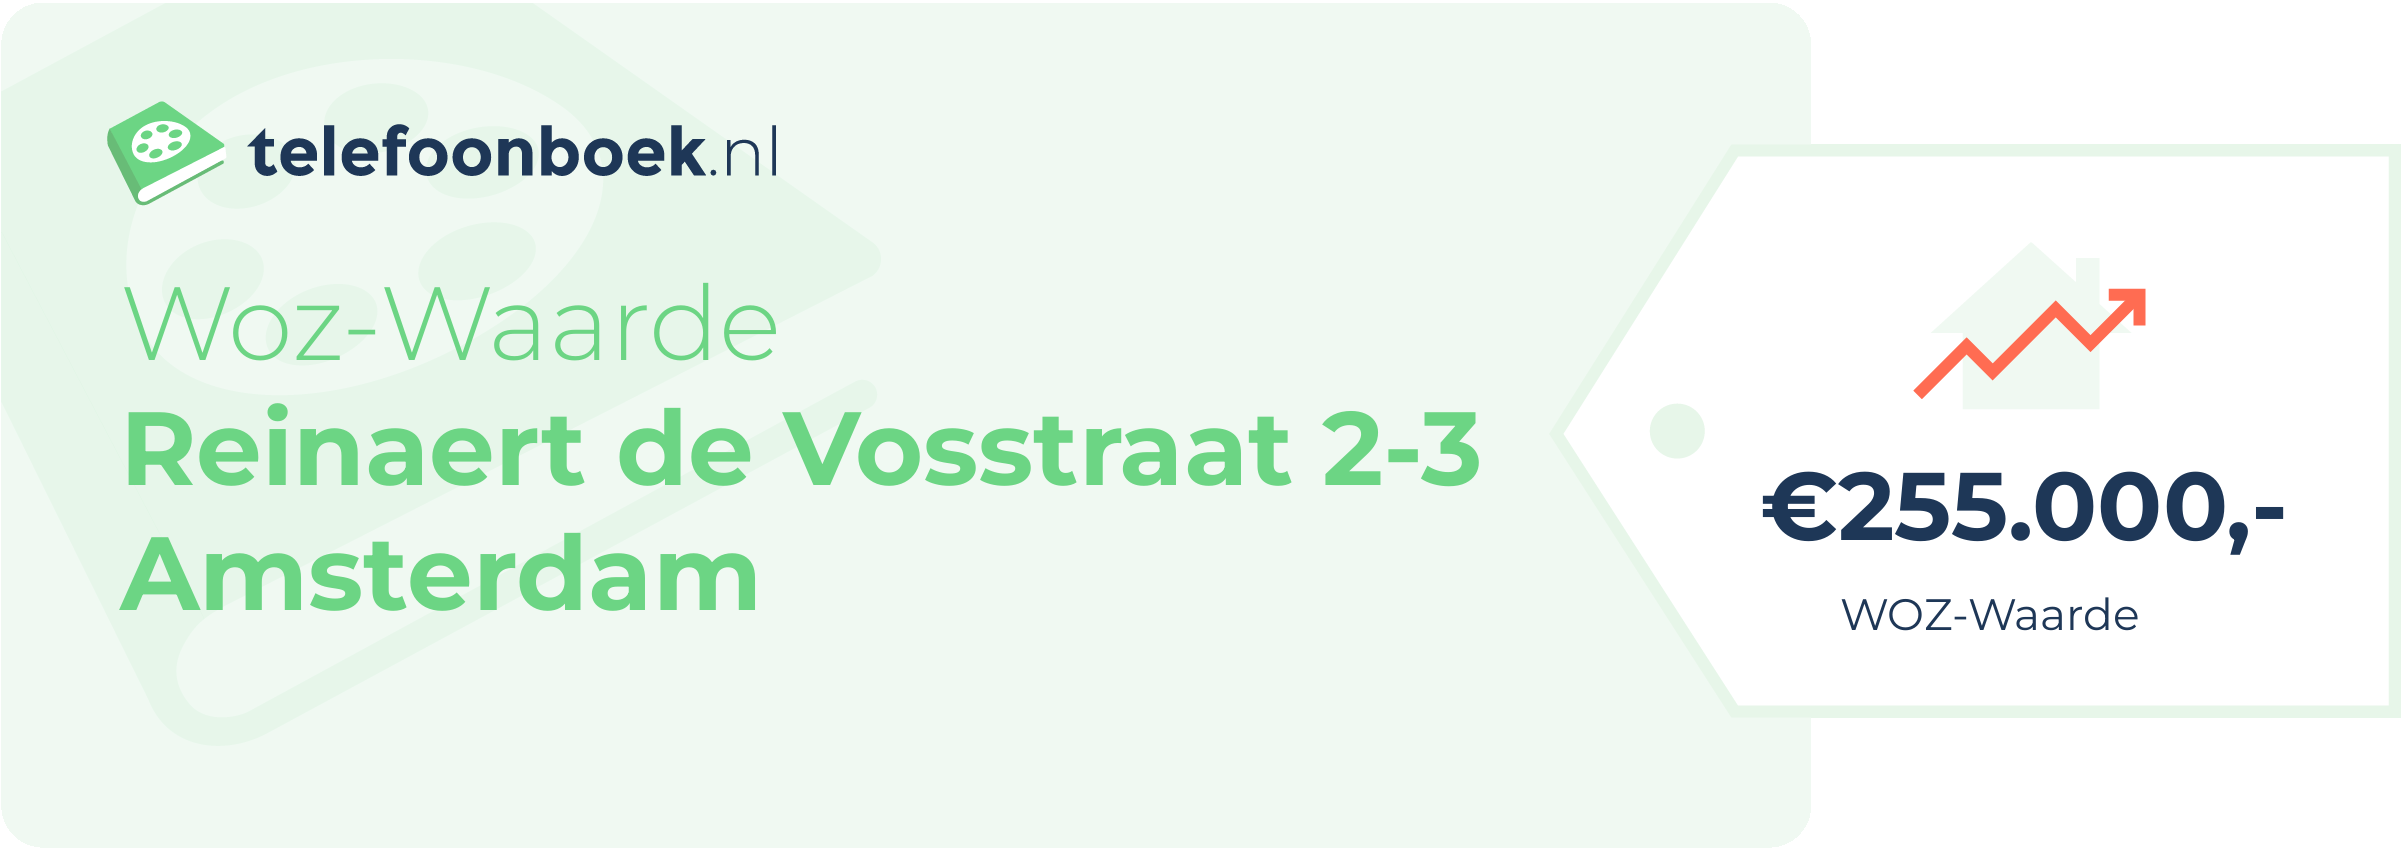 WOZ-waarde Reinaert De Vosstraat 2-3 Amsterdam